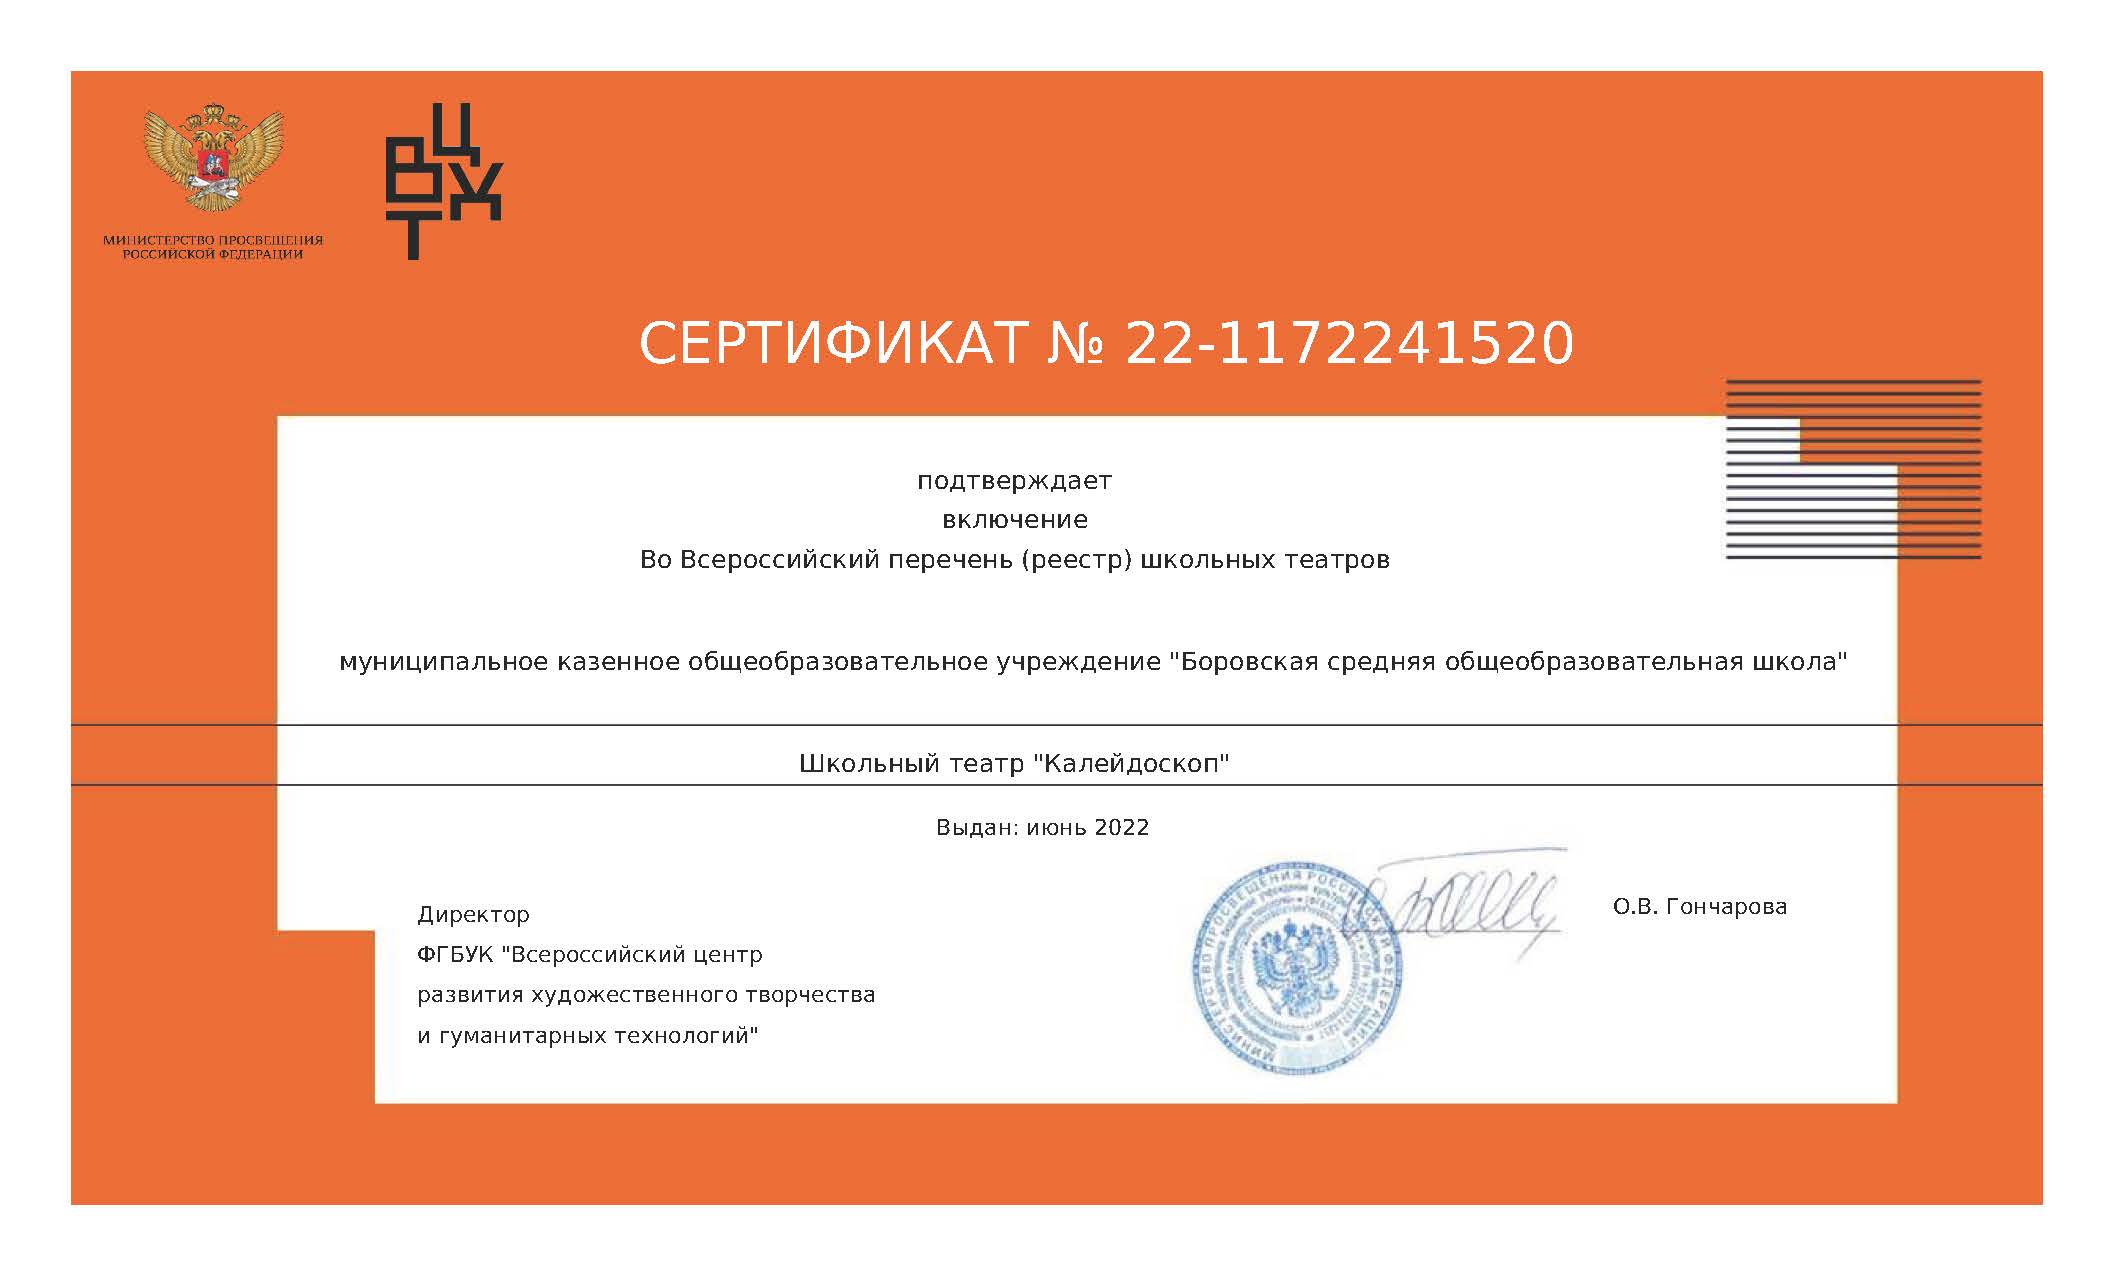 Сертификат о включении во Всероссийский перечень театров.